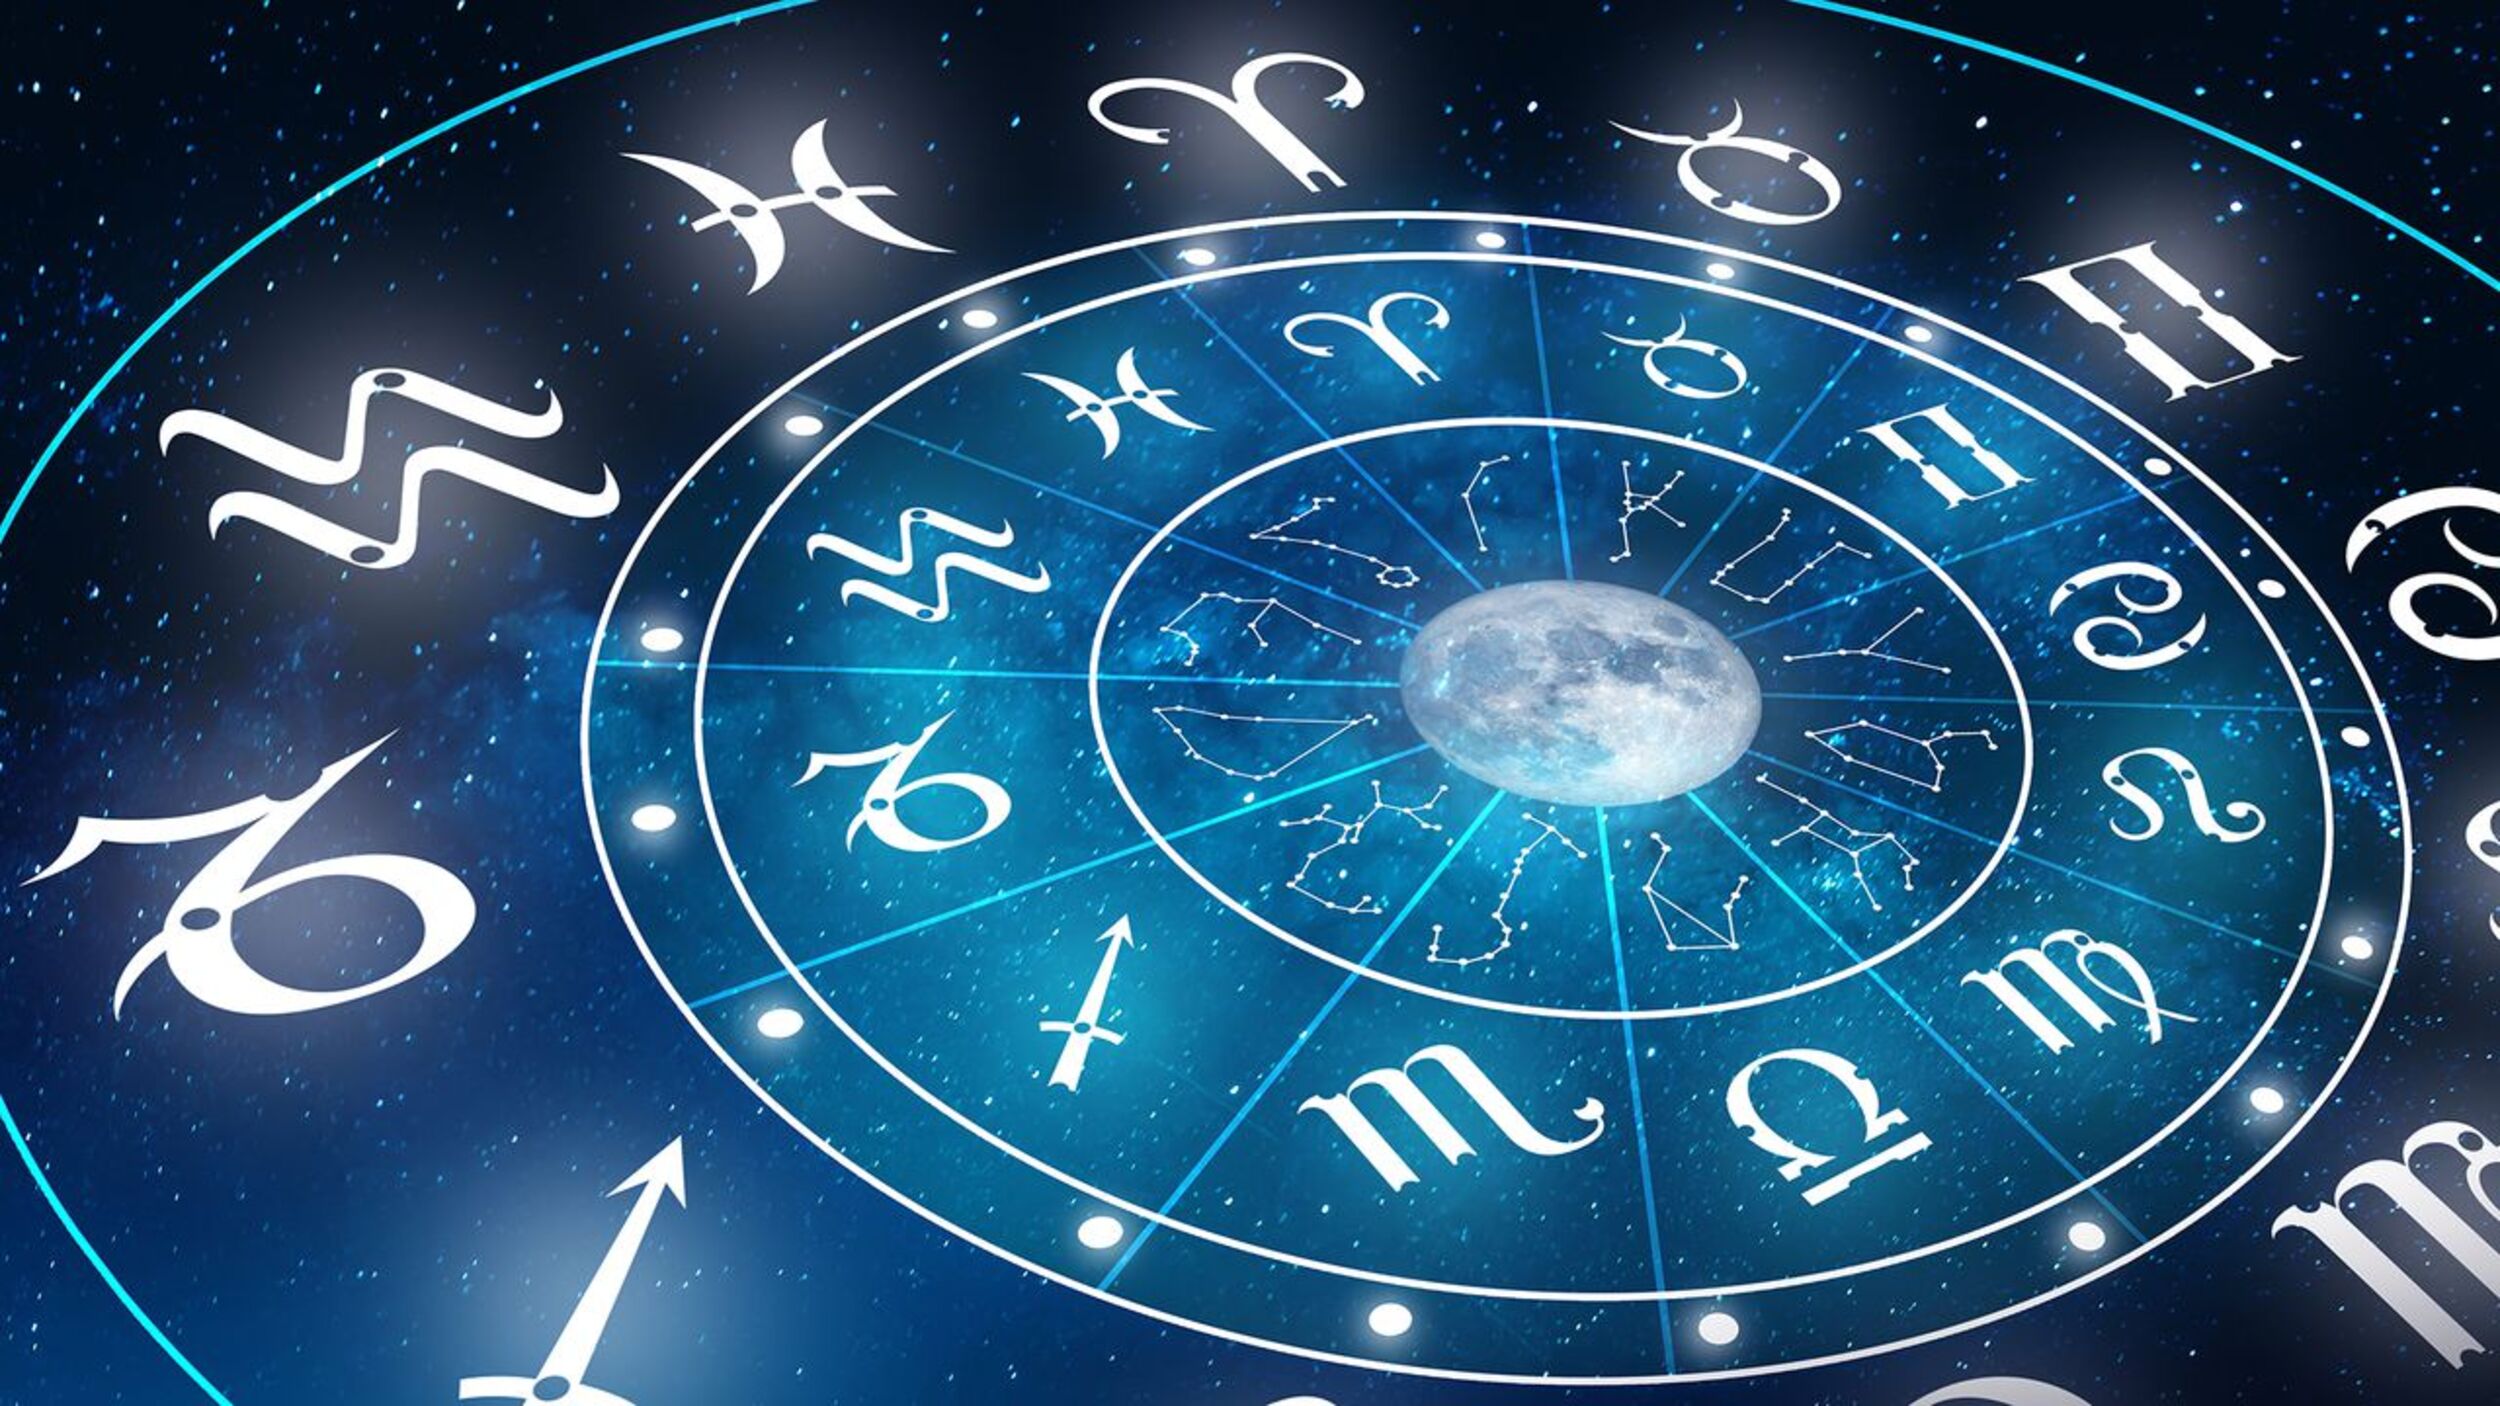 La astrología es una mentira peligrosa